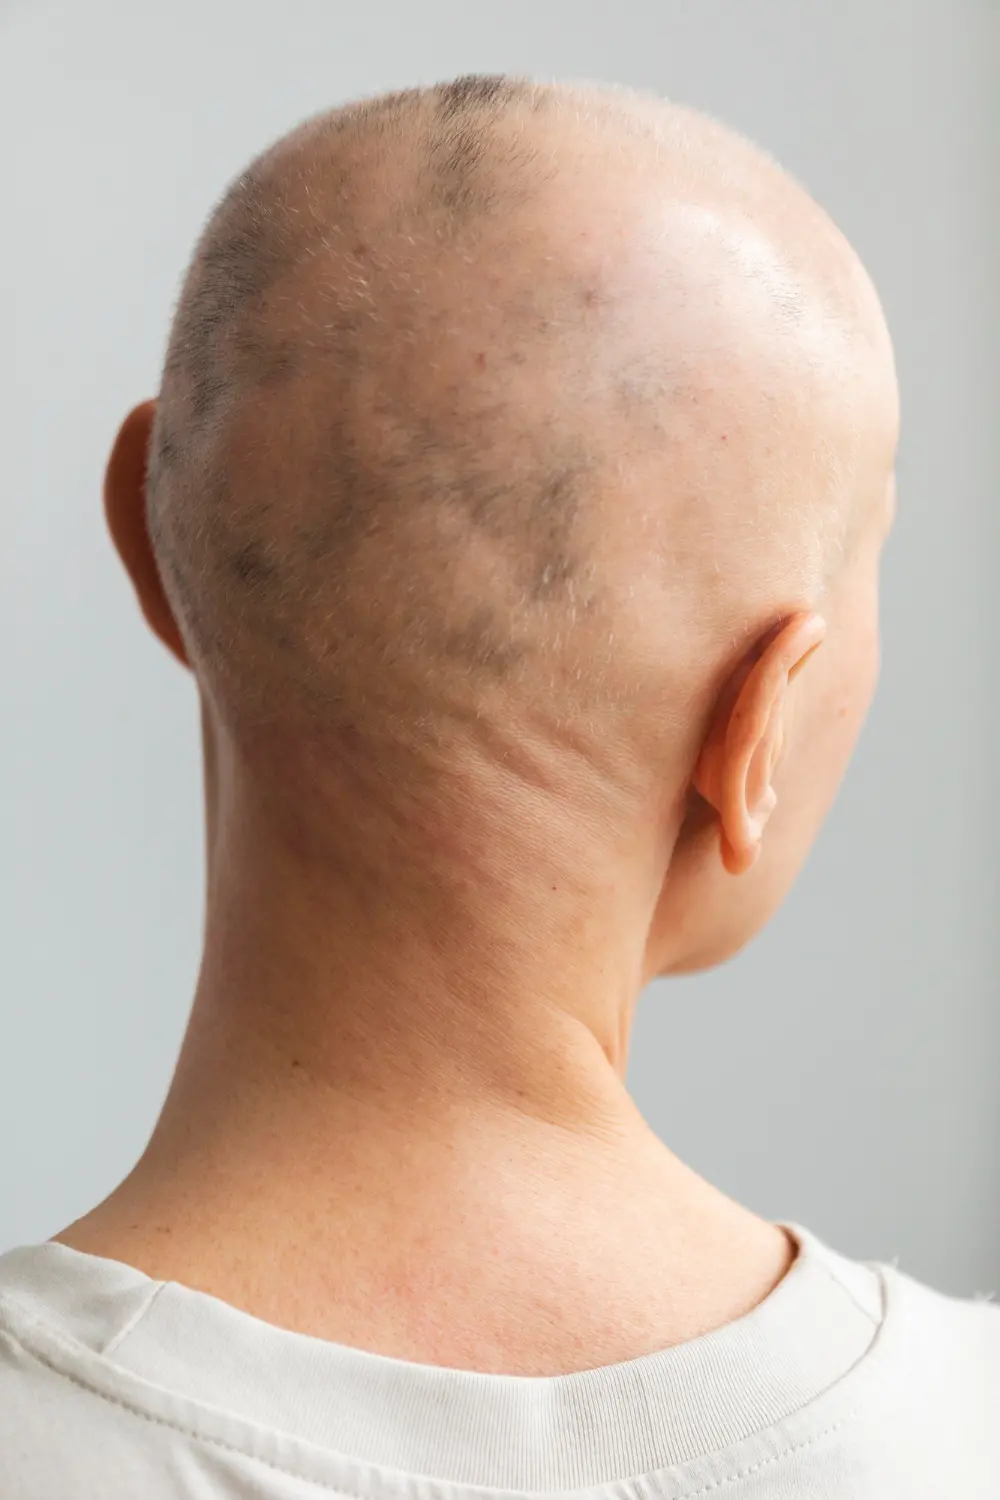 Repousse cheveux après alopécie